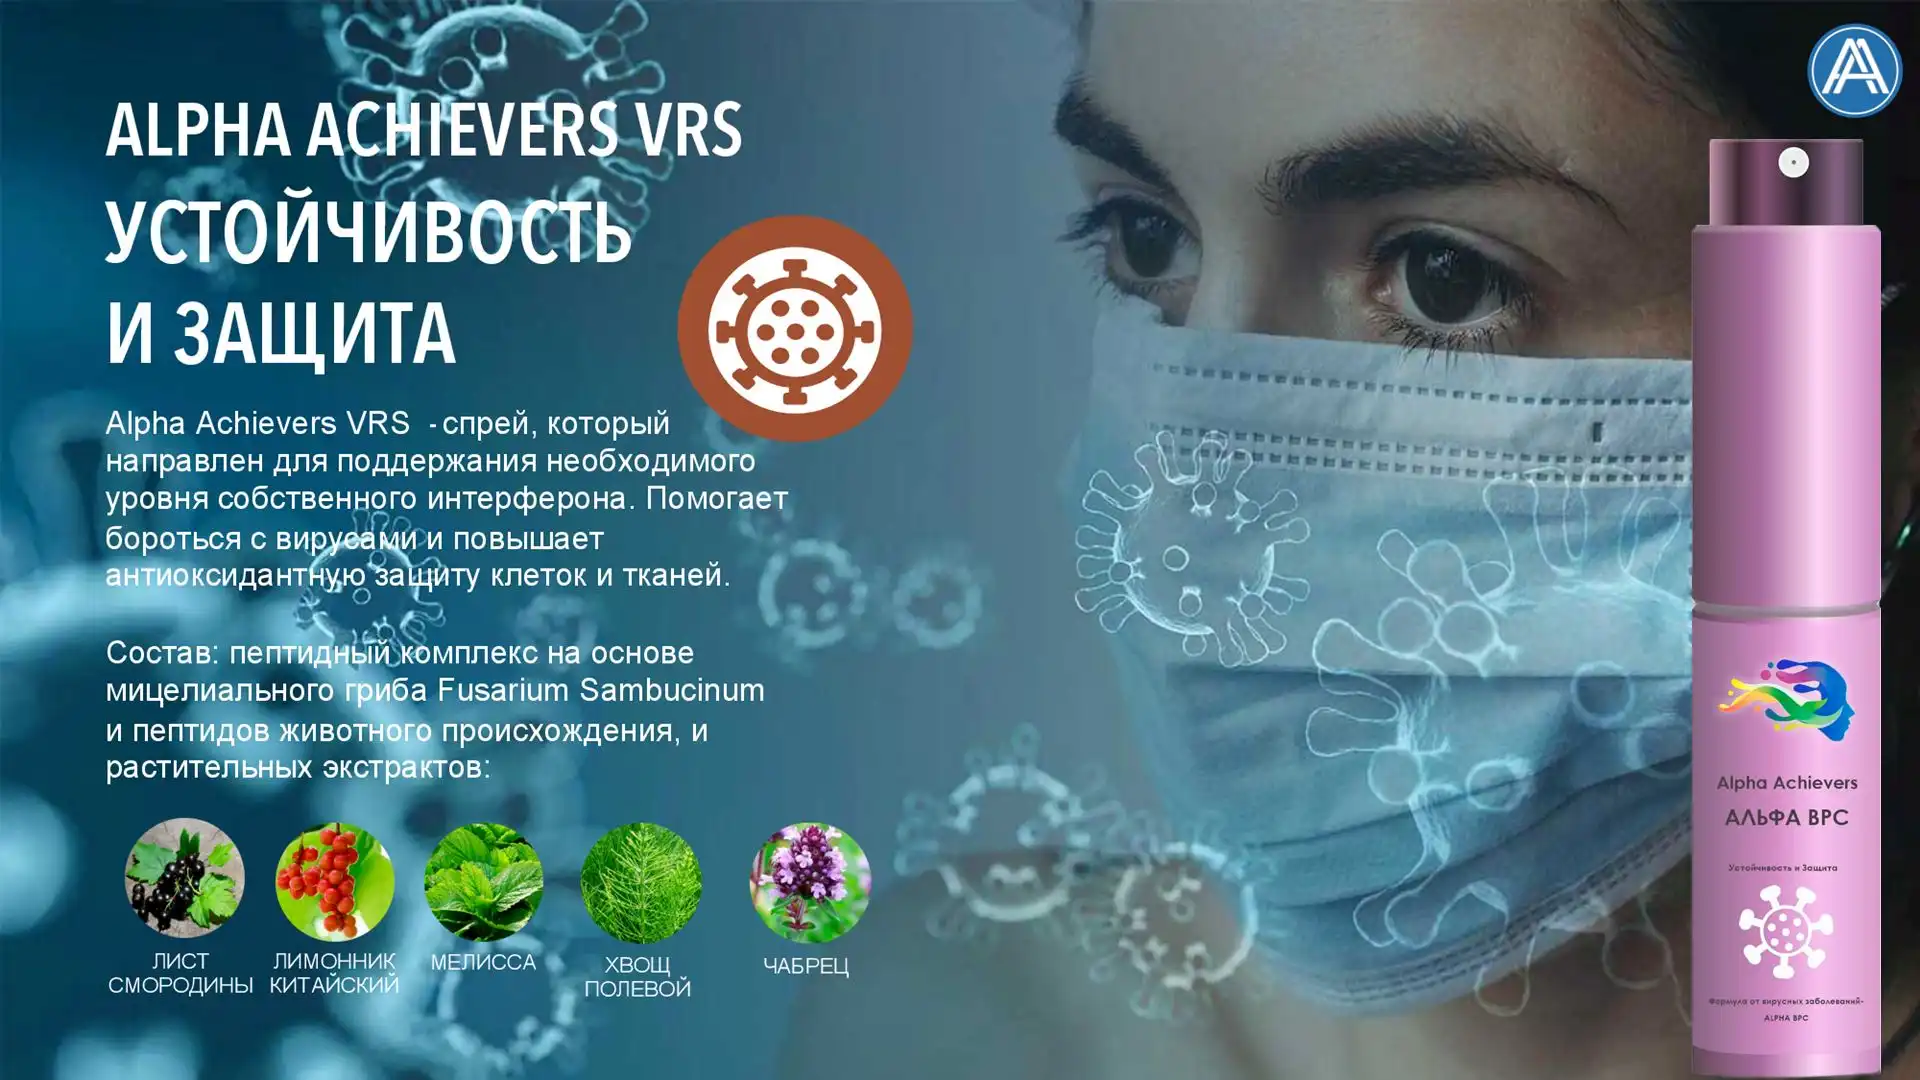 Alpha Achievers VRS - спрей с Пептидами, защищает от вирусов и инфекций. Укрепляет иммунитет